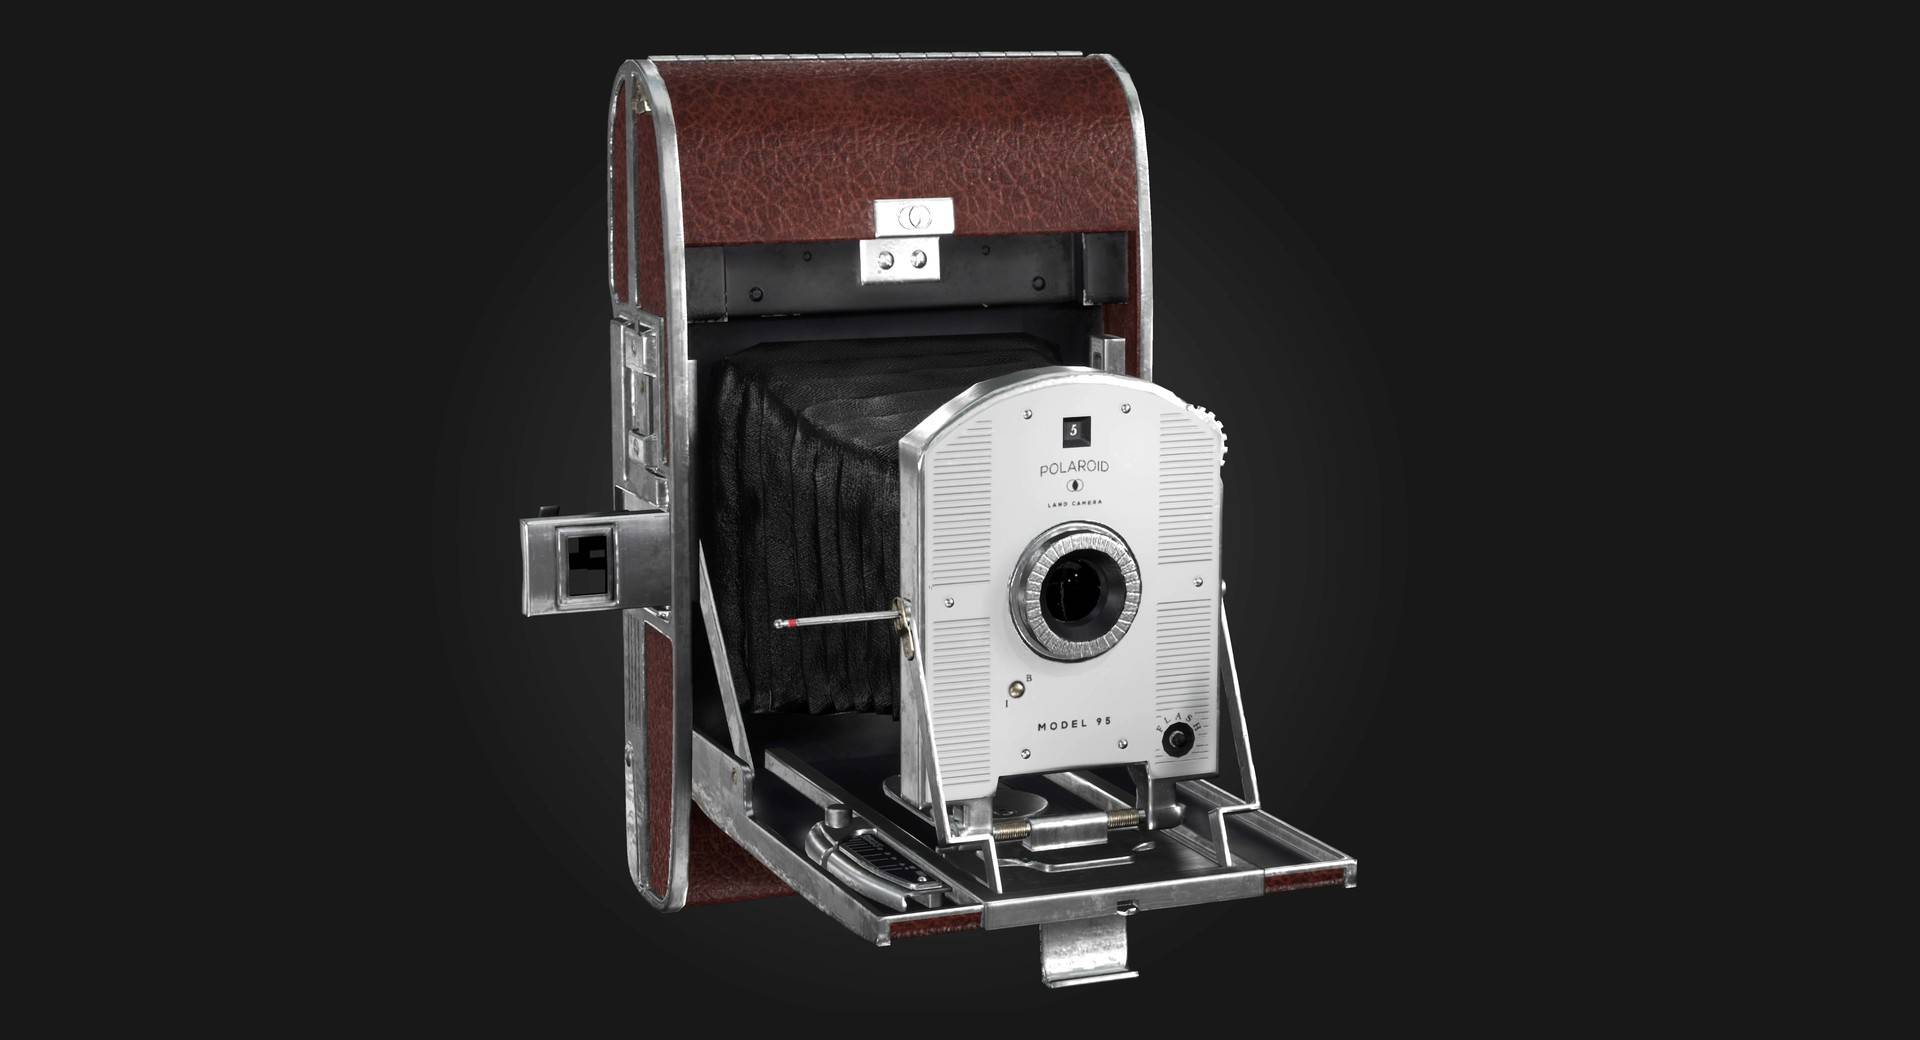 sara obert render1 - La fotocamera Polaroid più piccola del mondo è qui, ami ancora le Polaroid?